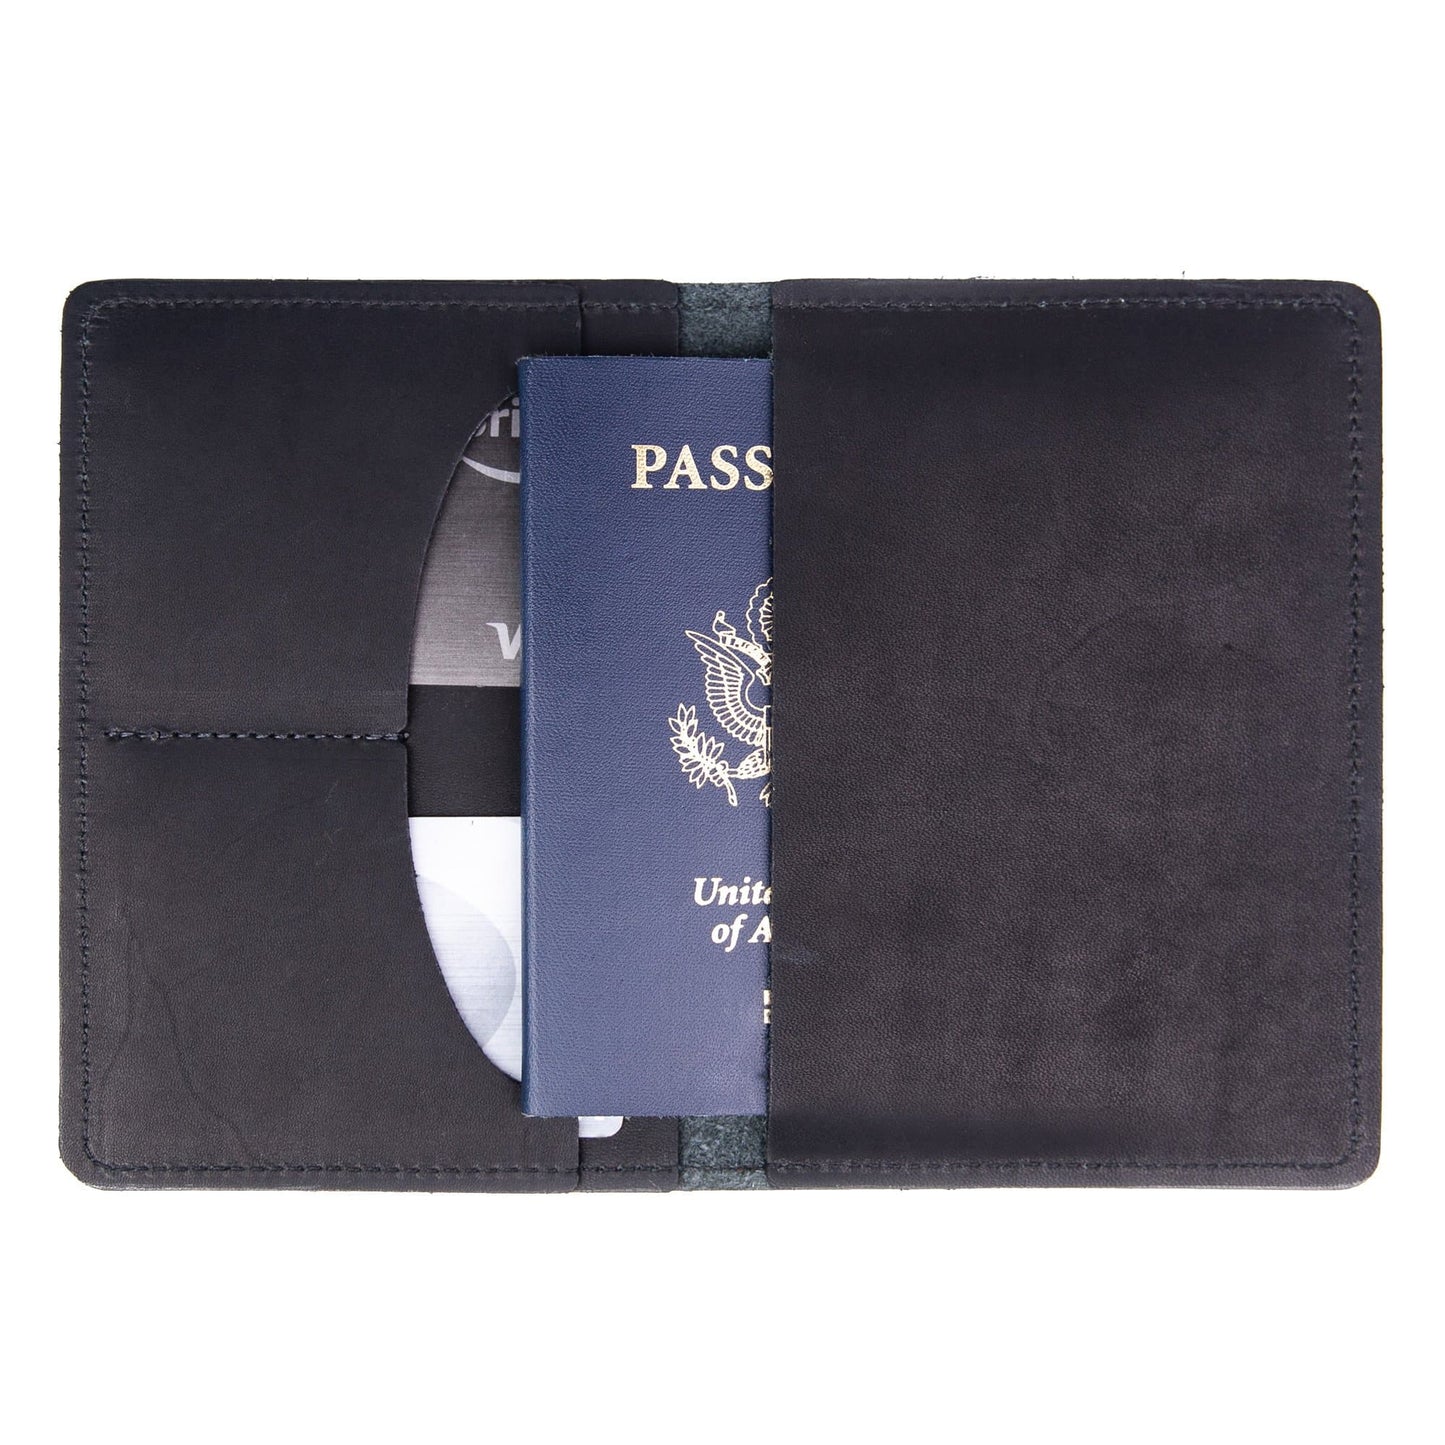 Wallet - Classic Passport